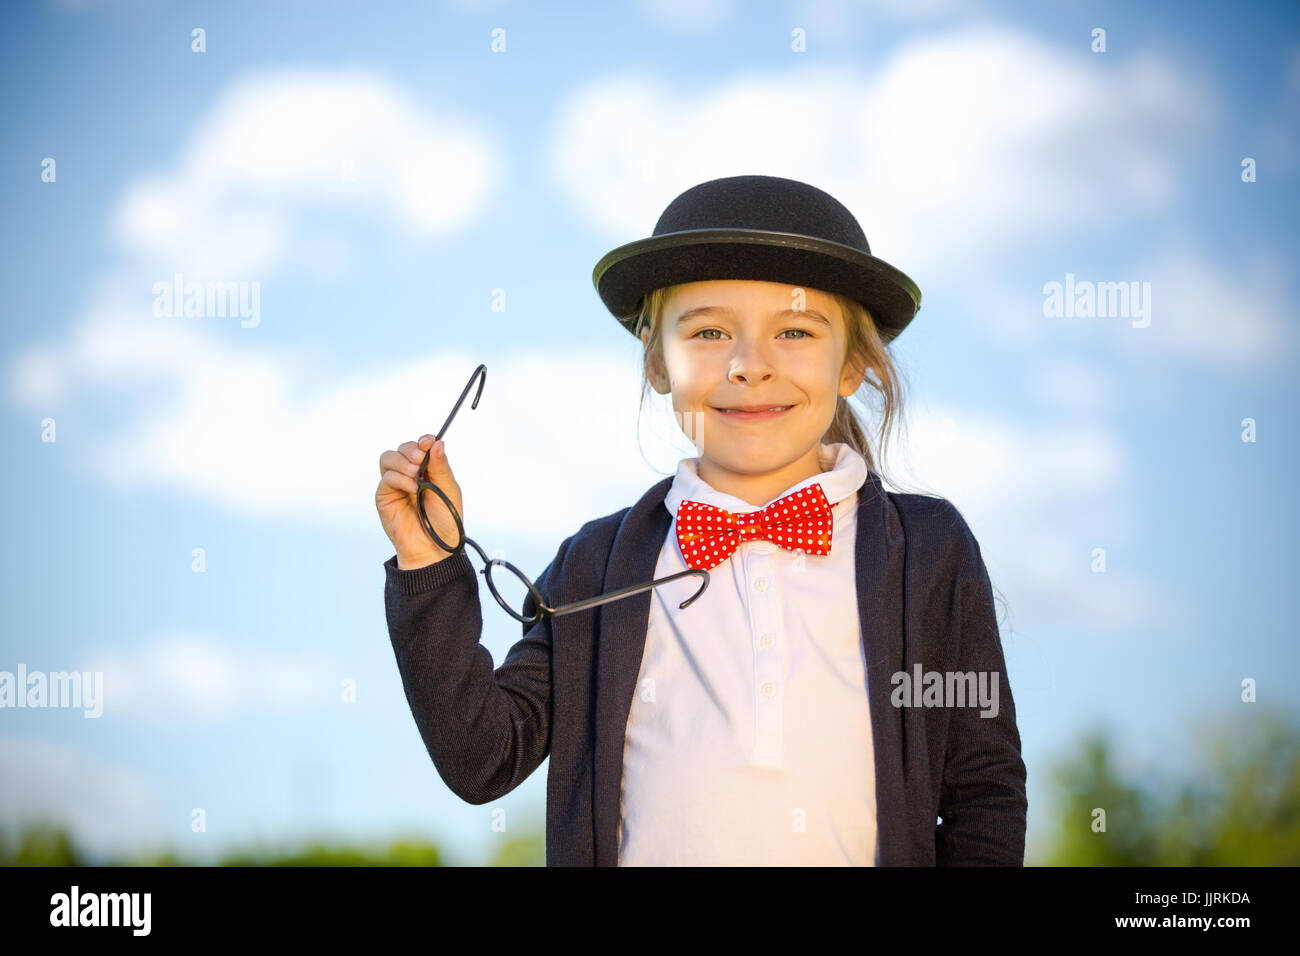 Funny bambina a bow tie e cappello bowler. Foto Stock